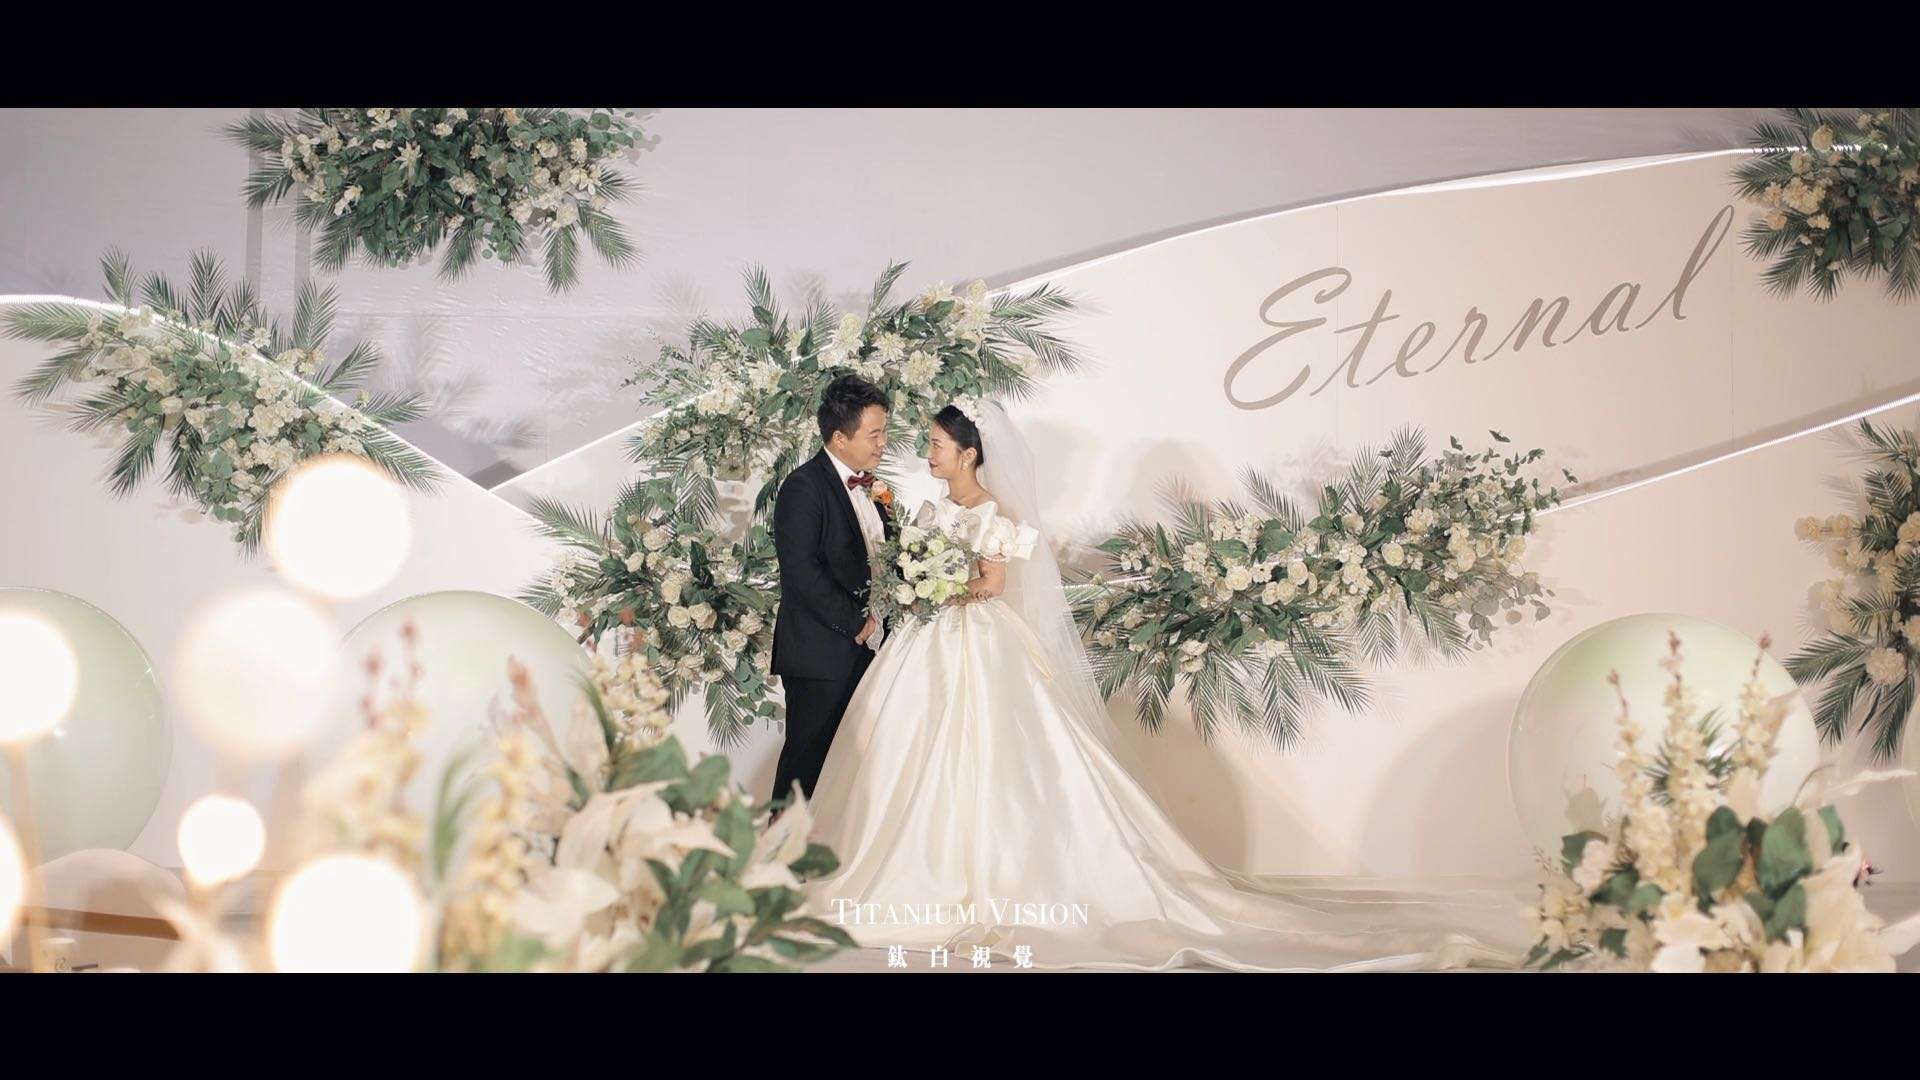 Mr. Zhou&Miss Chen Wedding Film